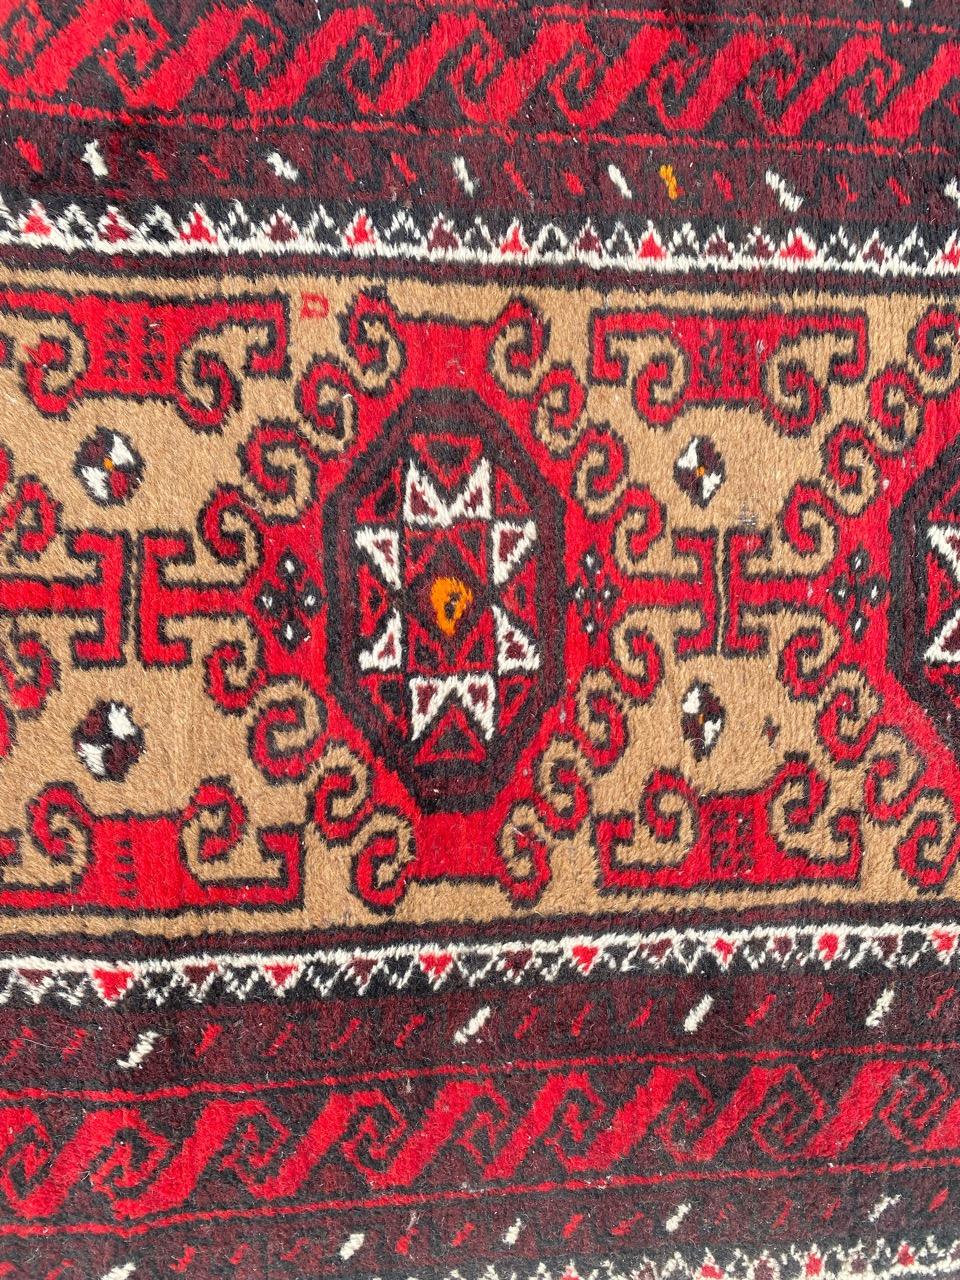 Joli tapis afghan baloutche du 20e siècle avec de beaux motifs géométriques et tribaux et de belles couleurs, entièrement noué à la main avec du velours de laine sur une base de coton.

✨✨✨
